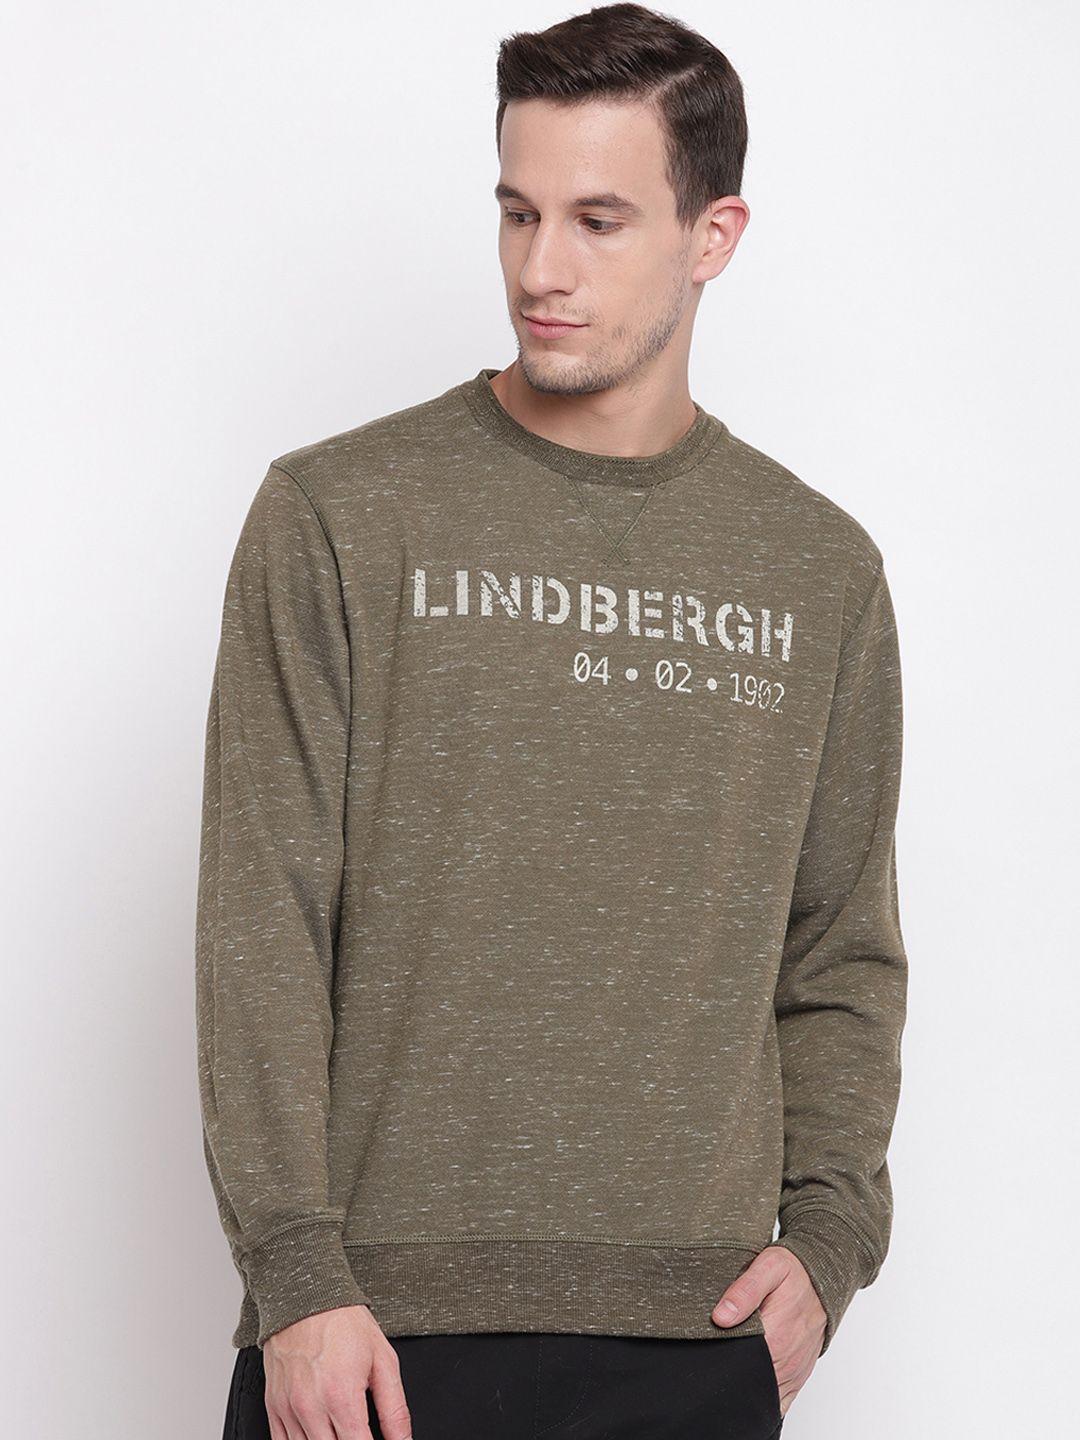 lindbergh men brown printed pullover sweater